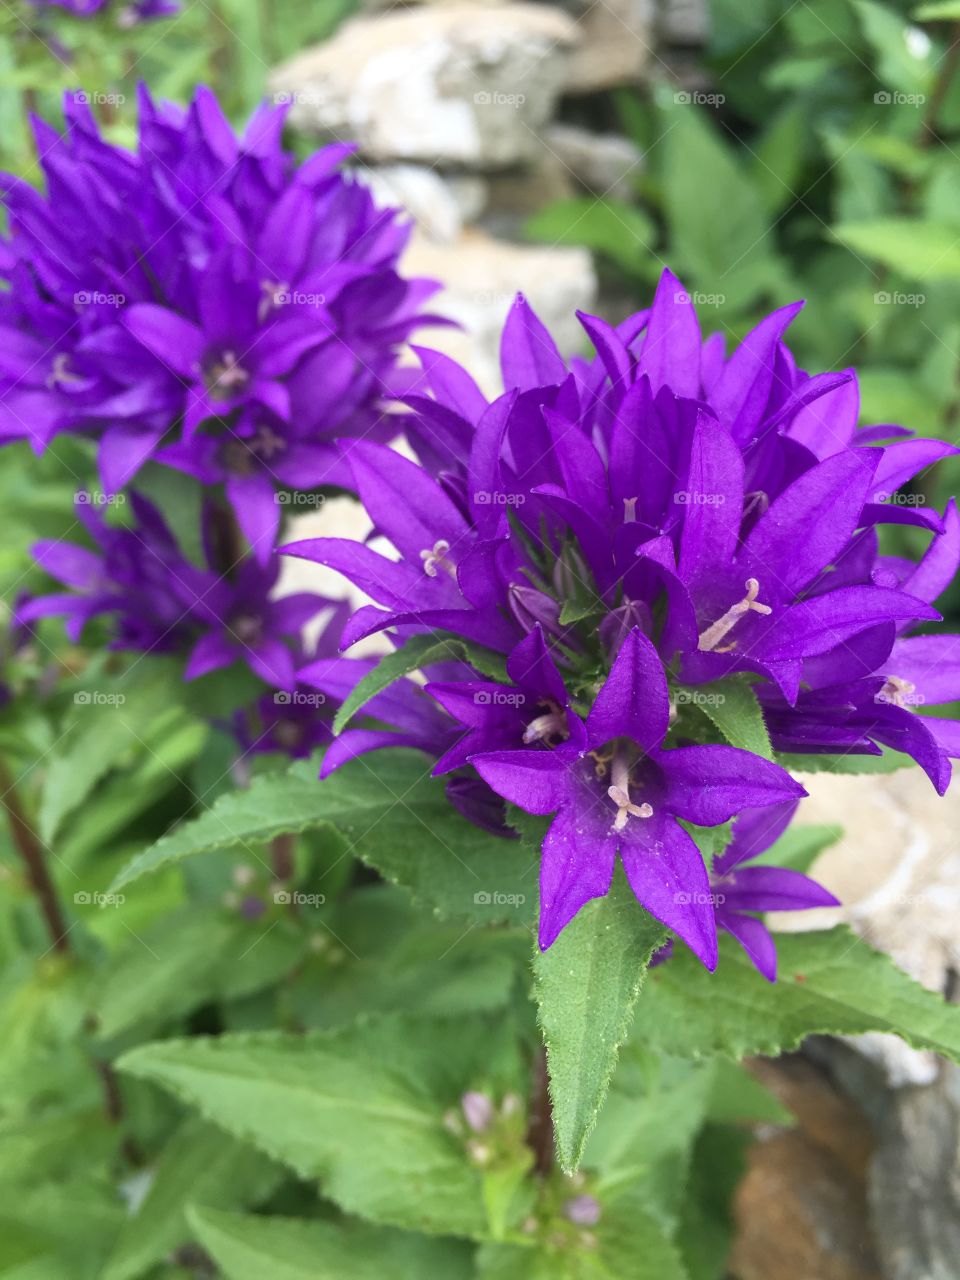 Vibrant purple flowers. 